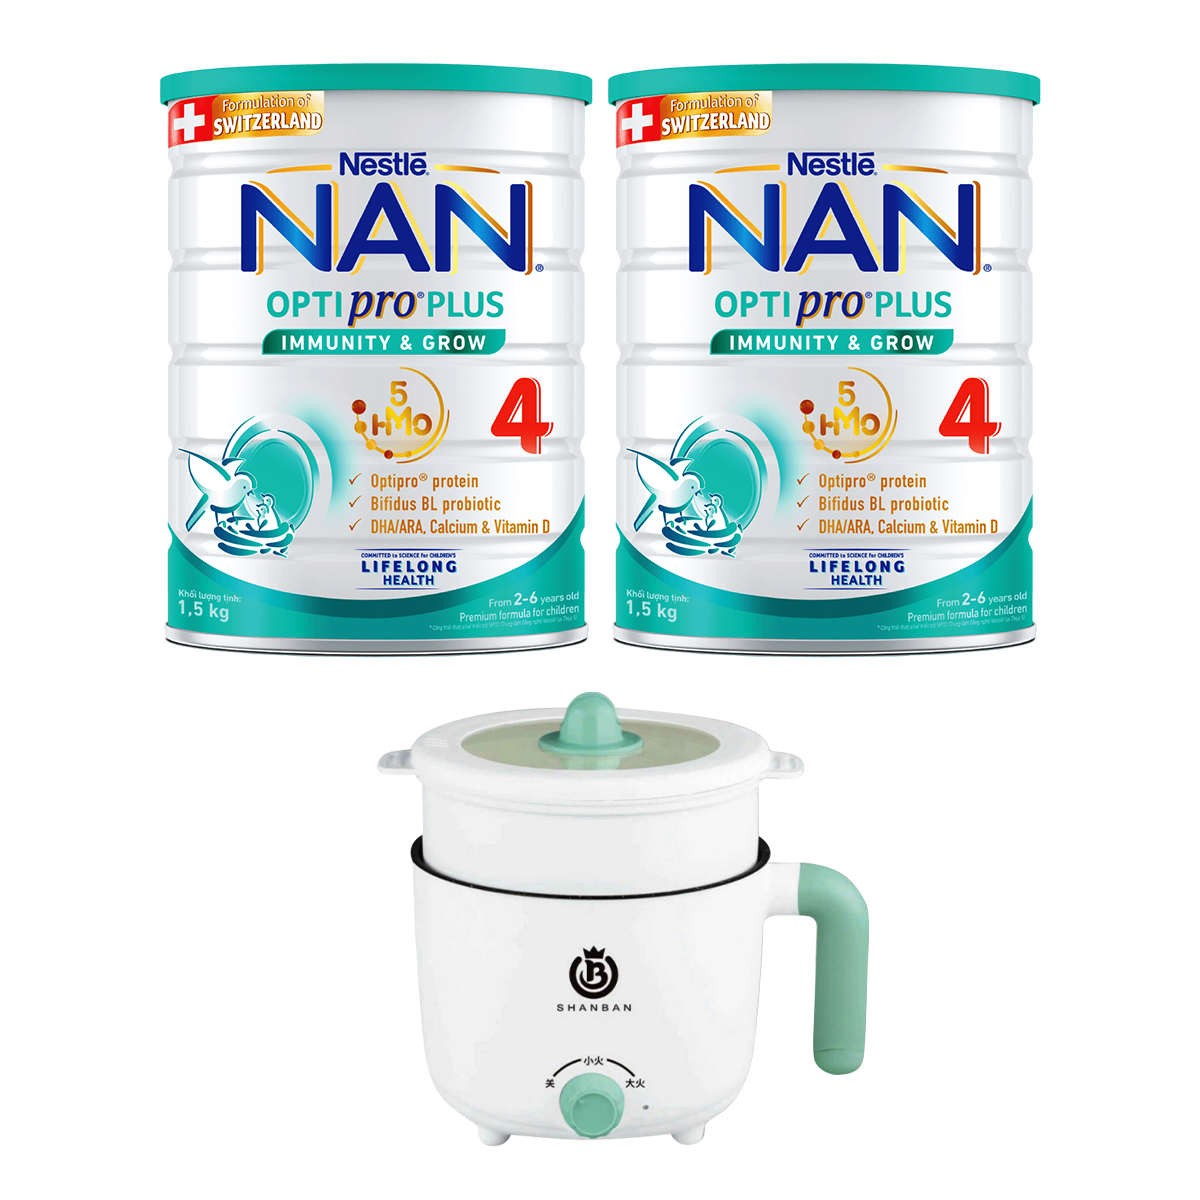 Bộ 2 lon Sữa bột Nestlé NAN OPTIPRO PLUS 4 1500g/lon với 5HMO Giúp tiêu hóa tốt + Tăng cường đề kháng  Tặng Nồi lẩu điện - Mẫu ngẫu nhiên  (2 - 6 tuổi)